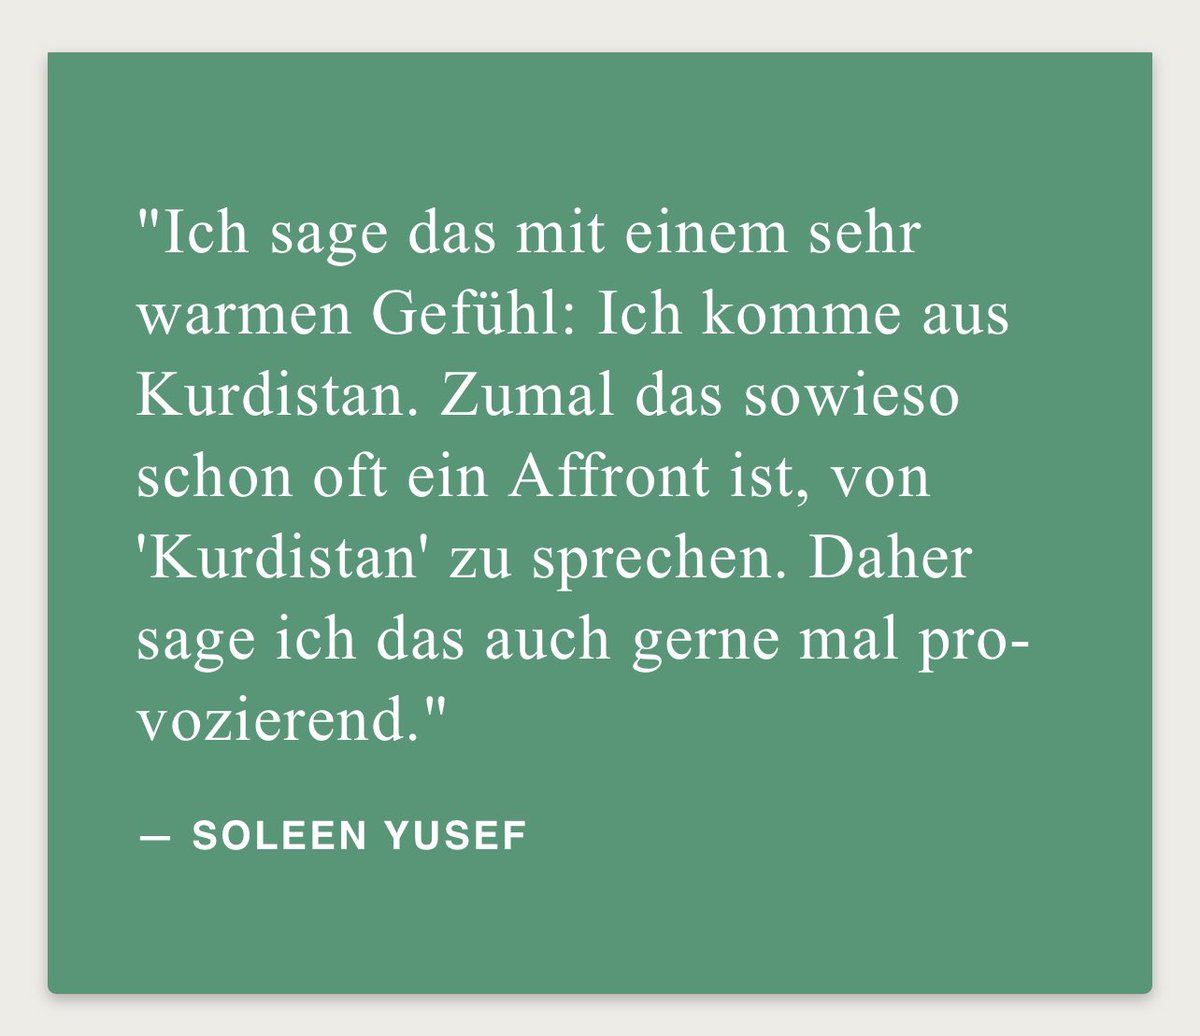 halbekatoffl.de/soleen-yusef-k… In der Podcastfolge: „Regisseurin Soleen Yusef spricht im Podcast über ihren prägenden Filmriss im Leben, übers Ausprobieren und Außenseiterin sein und wie sie von Stationen wie Kurdistan, Ostfriesland, Ludwigsburg und Berlin nach vielen Umwegen dazu kam,…